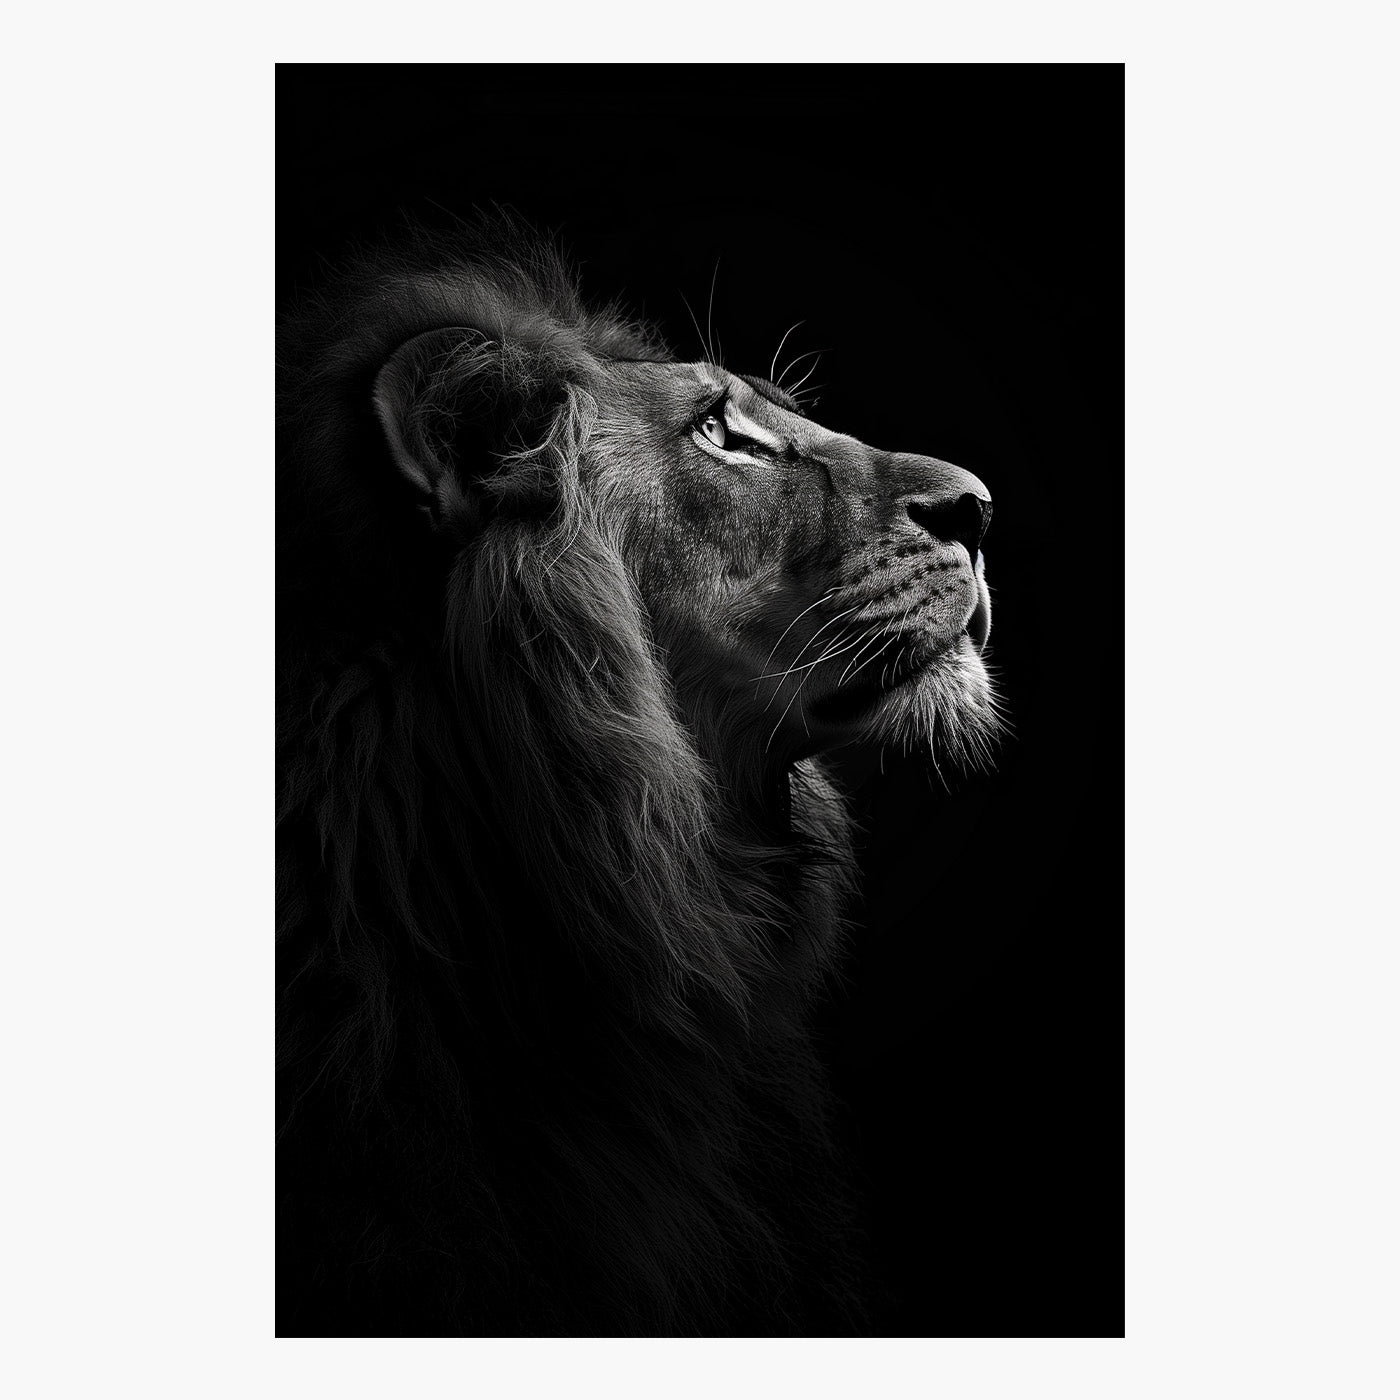 Lion's Profile